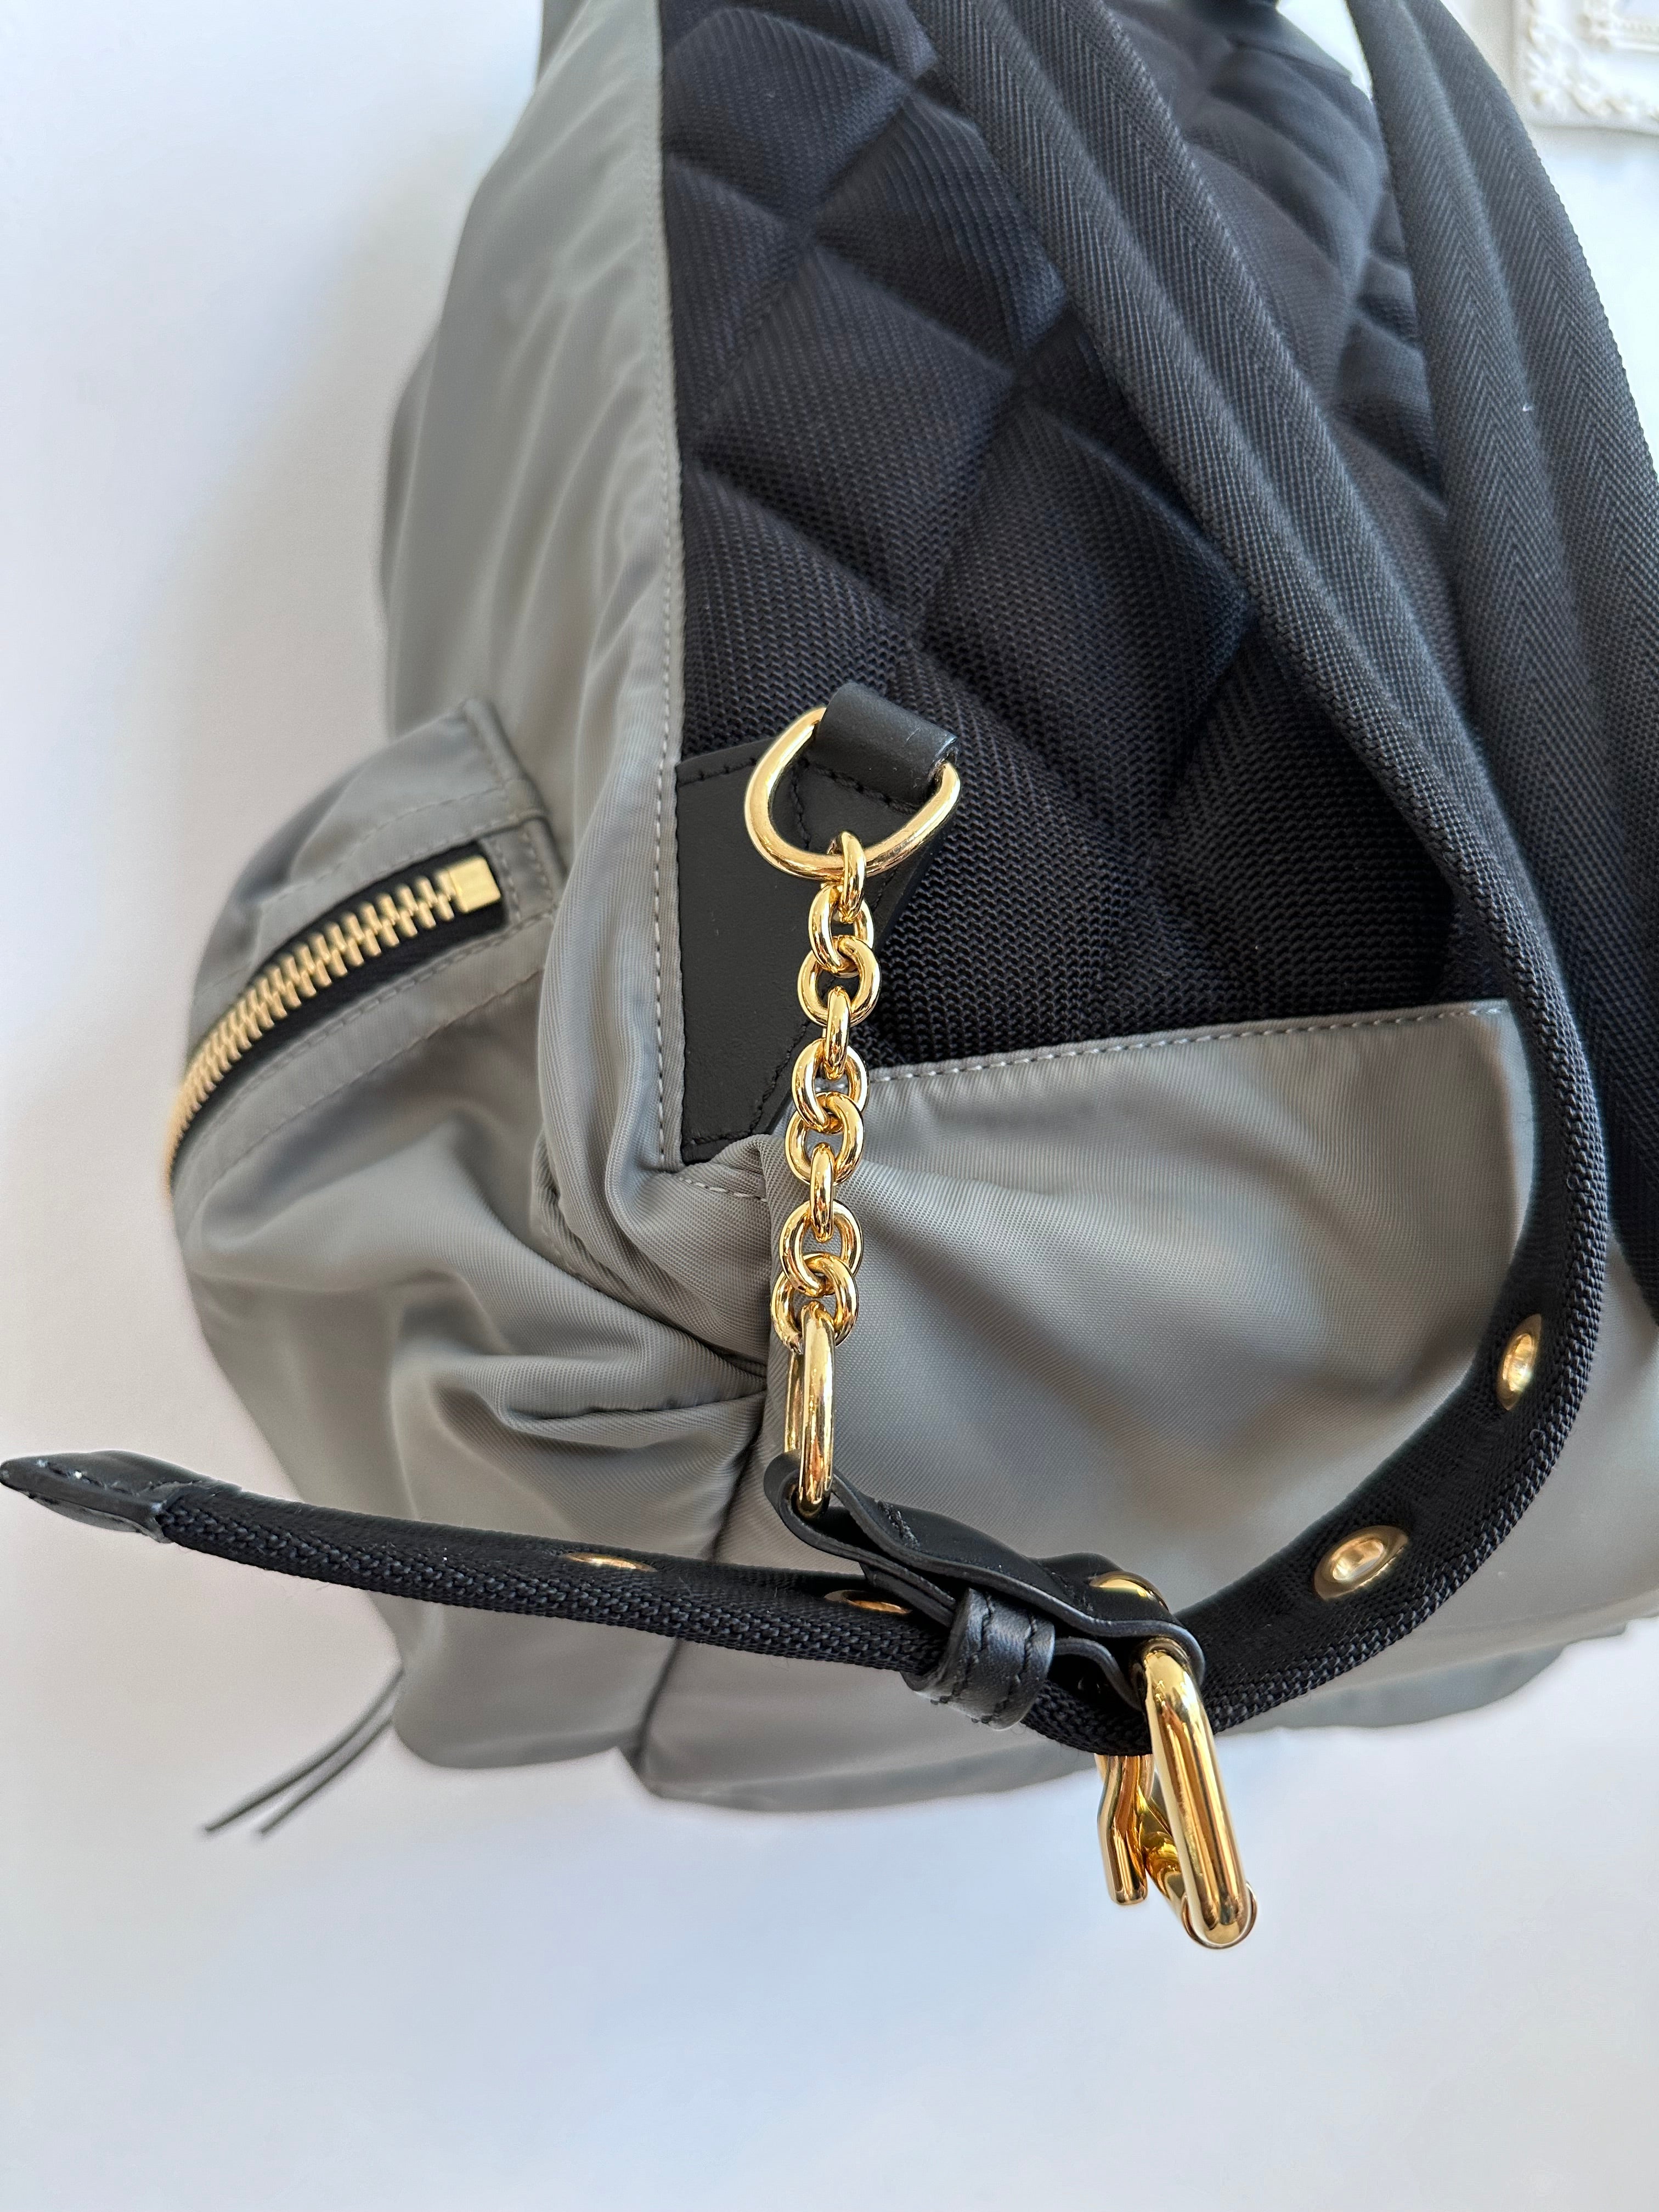 Pre-Owned BURBERRY Nylon Rucksack Backpack